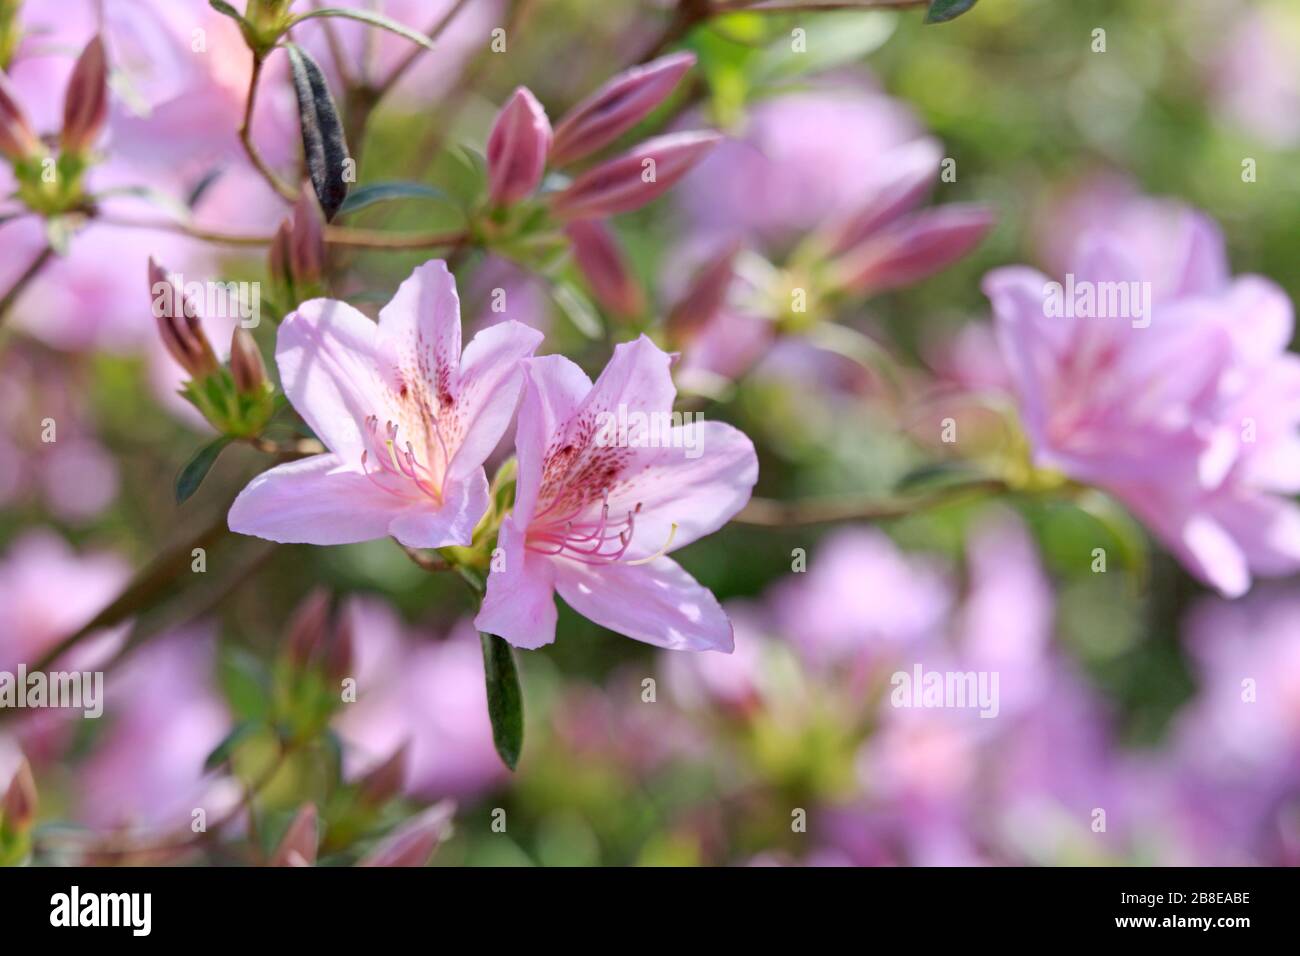 Rhododendron poukhanense - Korean azalea - April Stock Photo